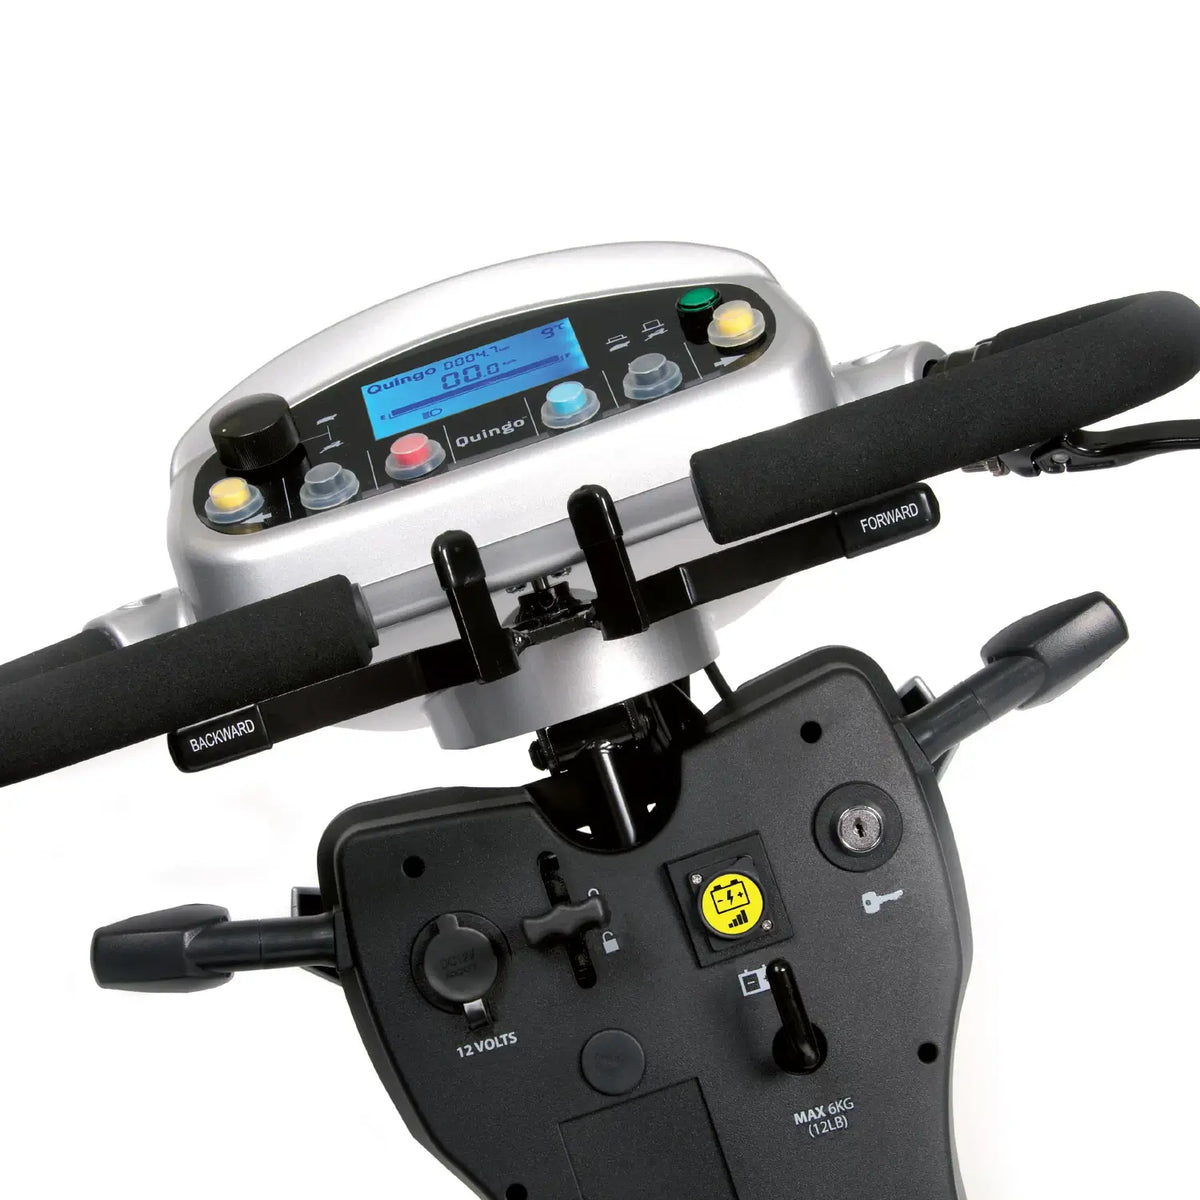 Quingo Vitess MK2 Mobility Scooter